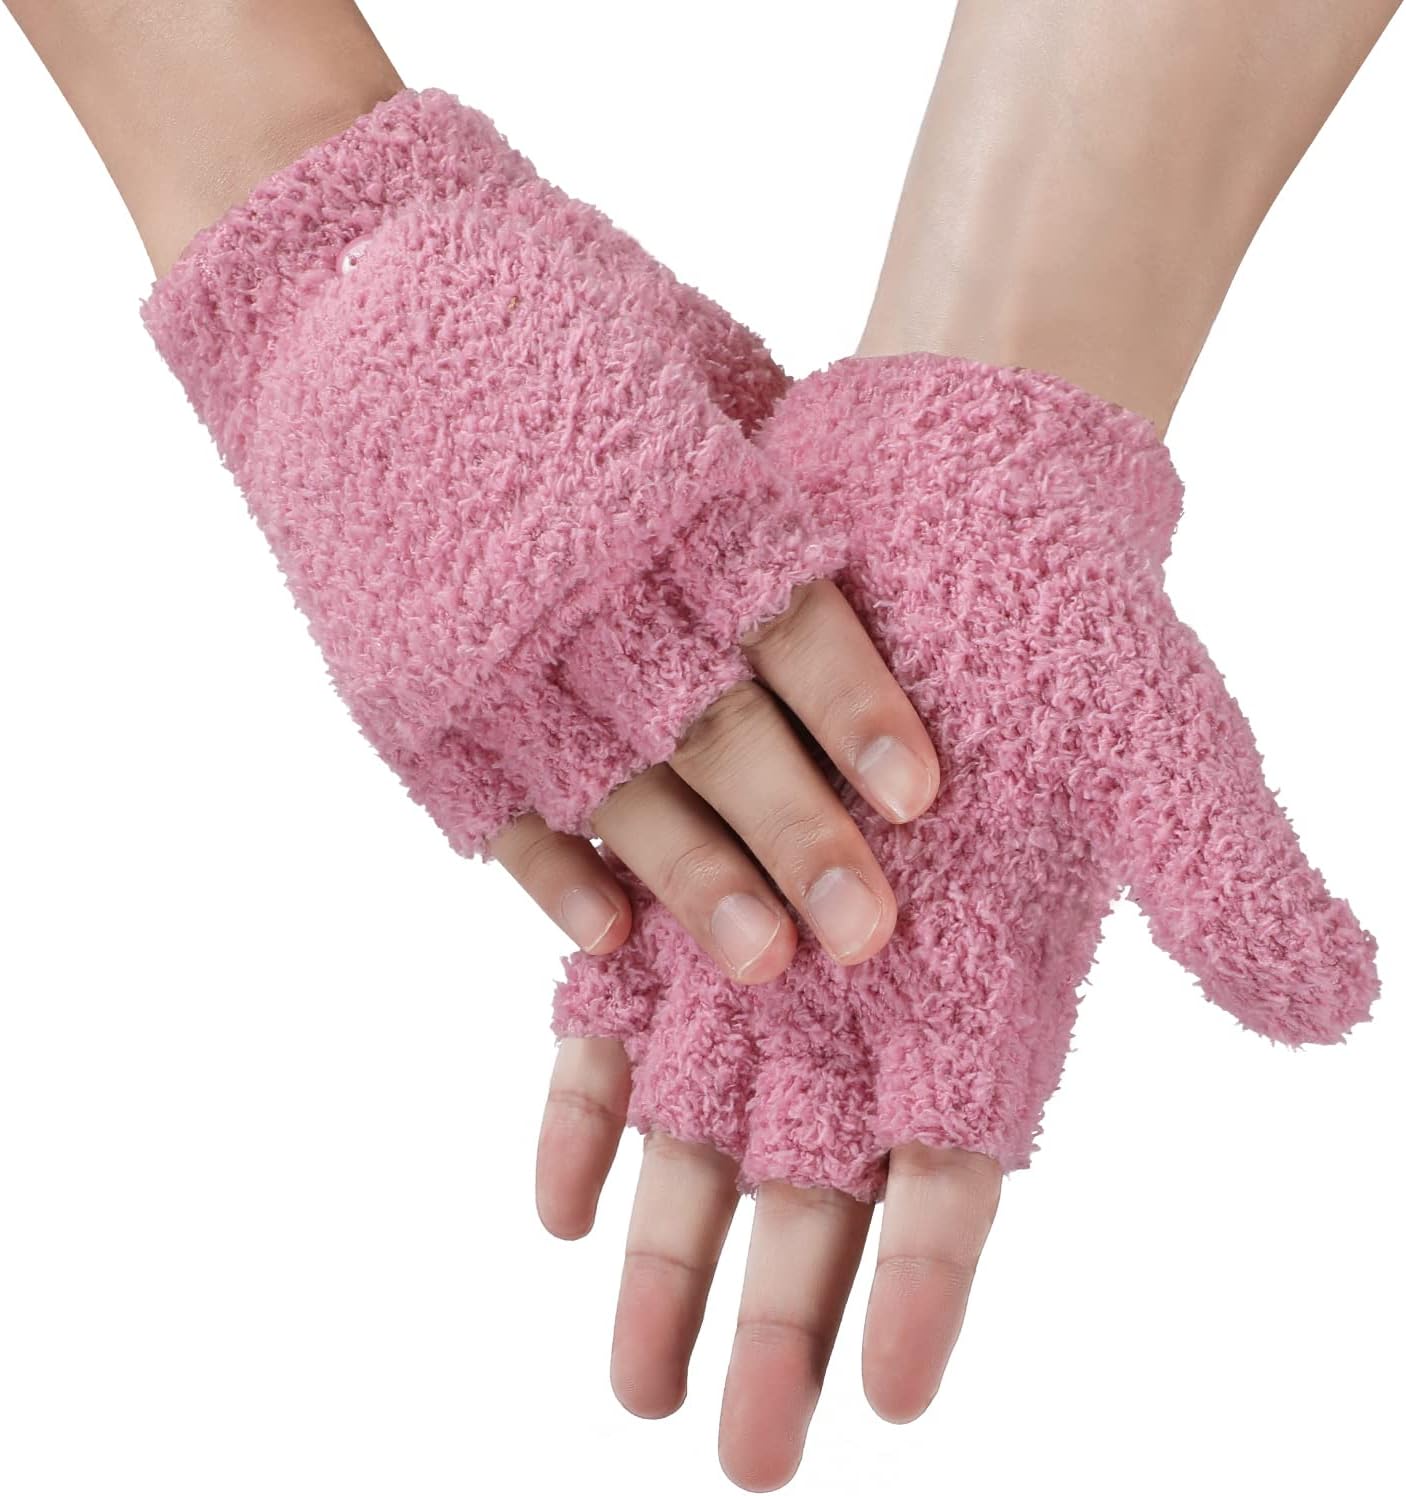 Achiou Warm Fingerless Gloves for Women Men, Convertible Winter Fingerless Mittens with Flip-top Cover, Knitted Wool Glove